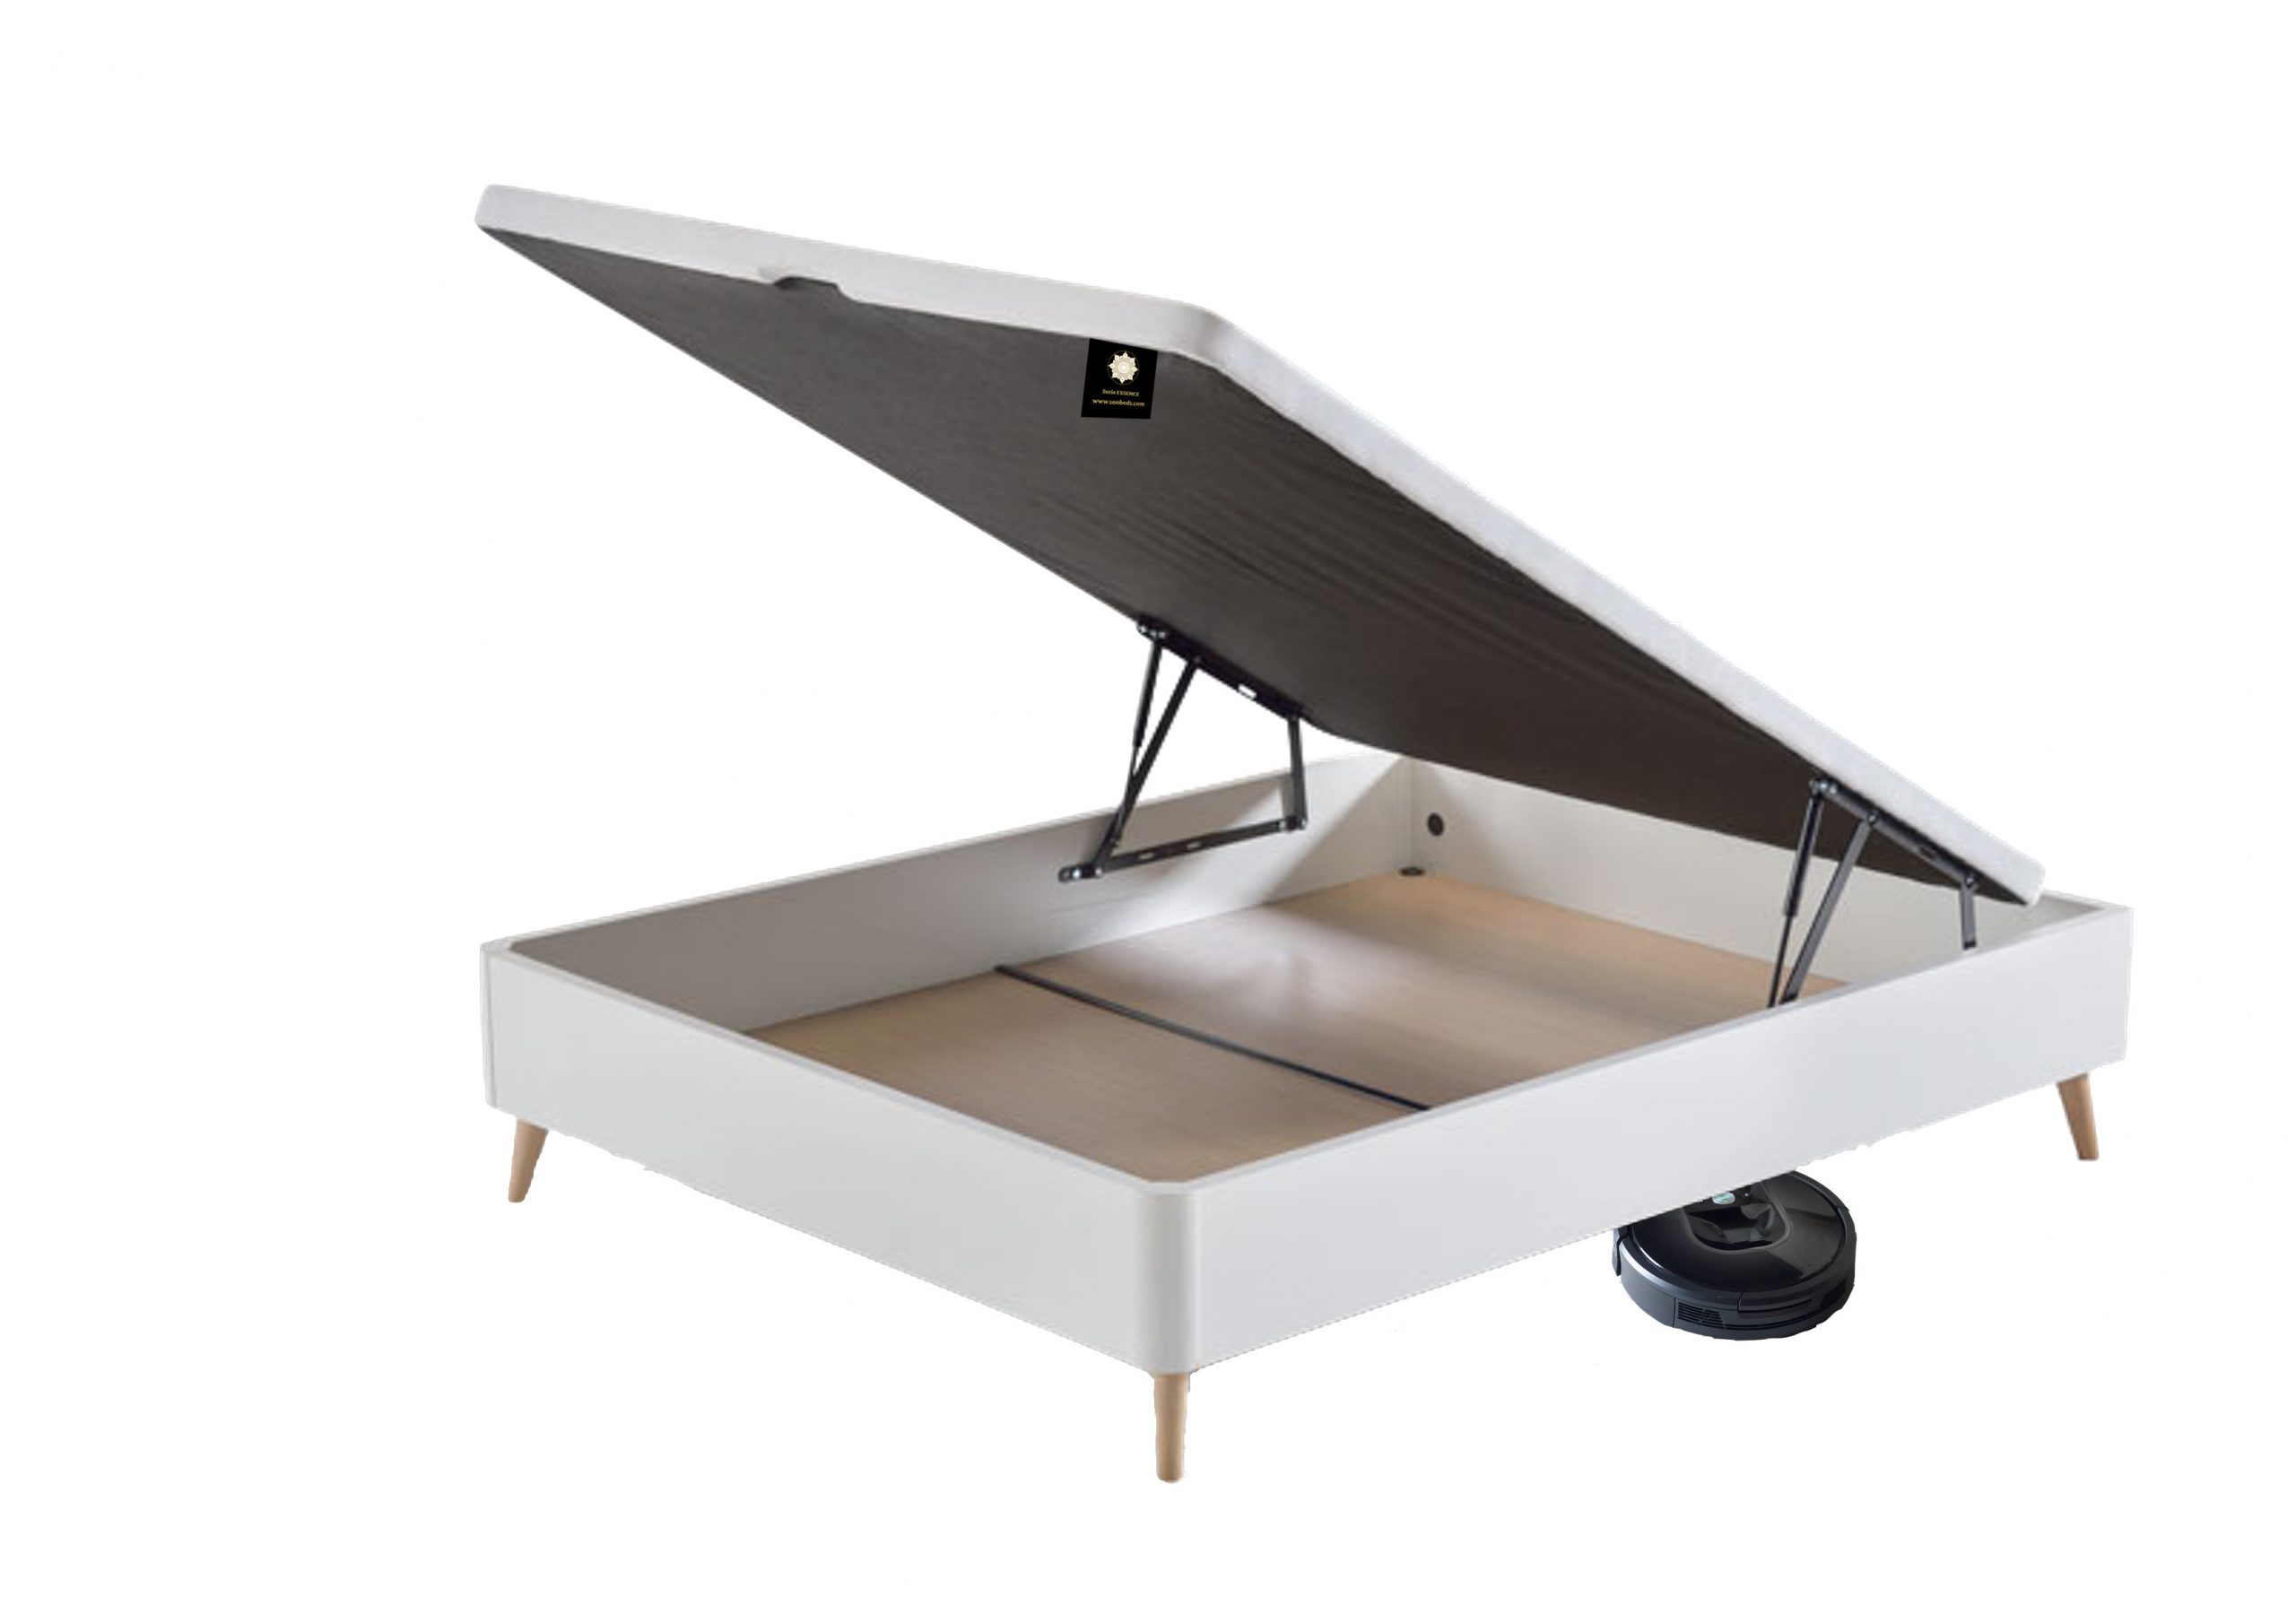 Canapé abatible Box 20 color blanco, abierto y robot aspirador